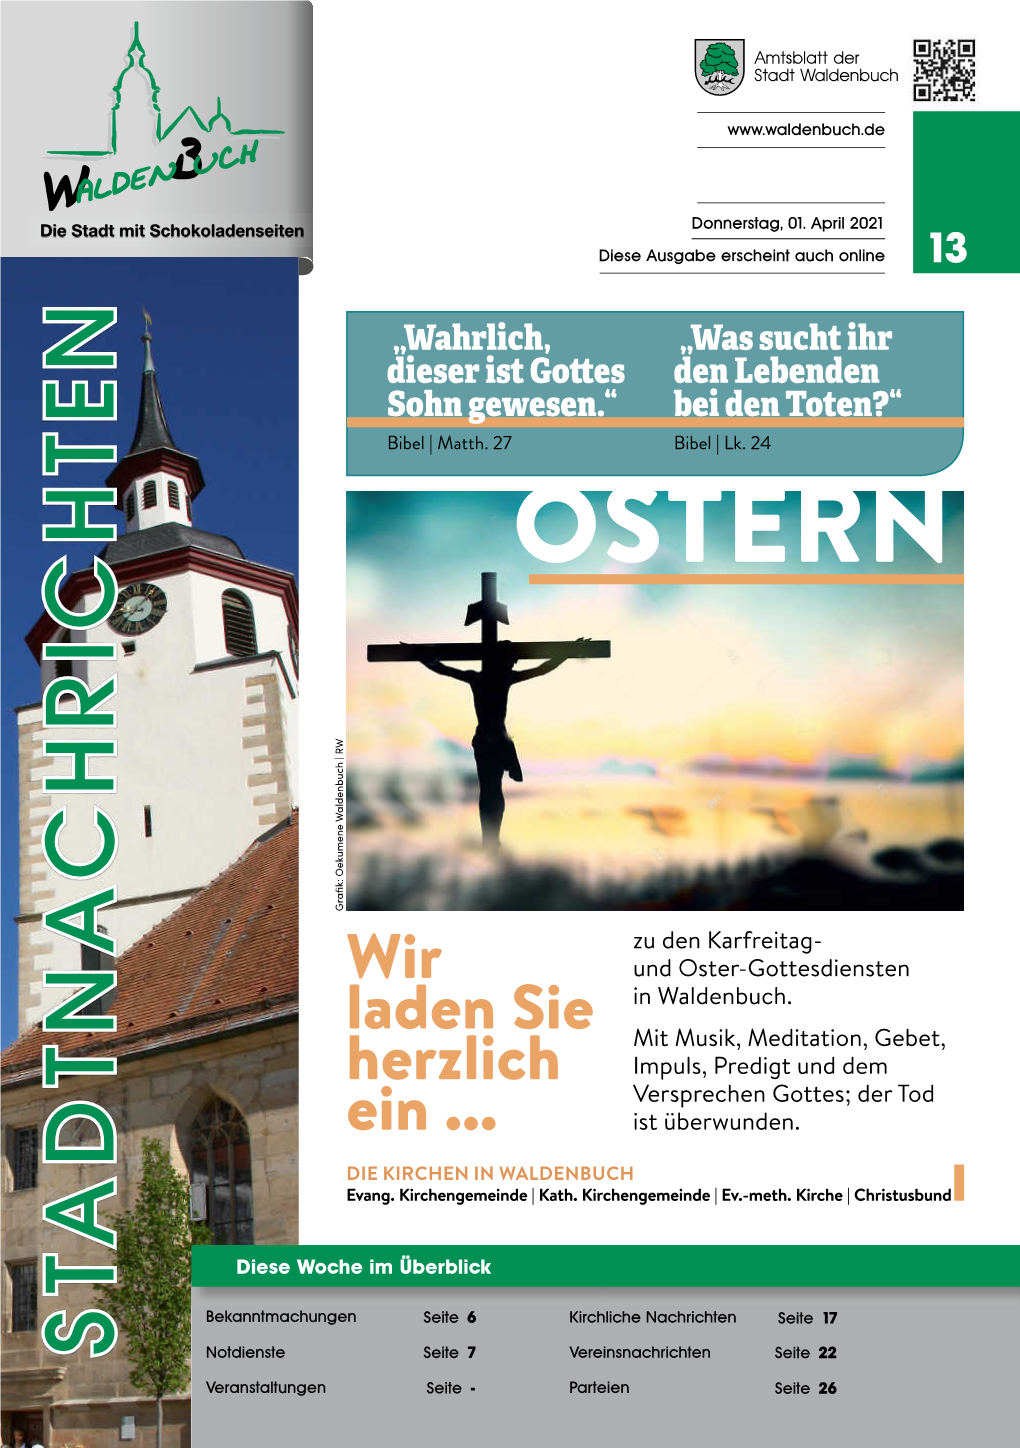 OSTERN Grafik: Oekumene Waldenbuch | RW Waldenbuch | Oekumene Grafik: Zu Den Karfreitag- Wir Und Oster-Gottesdiensten in Waldenbuch